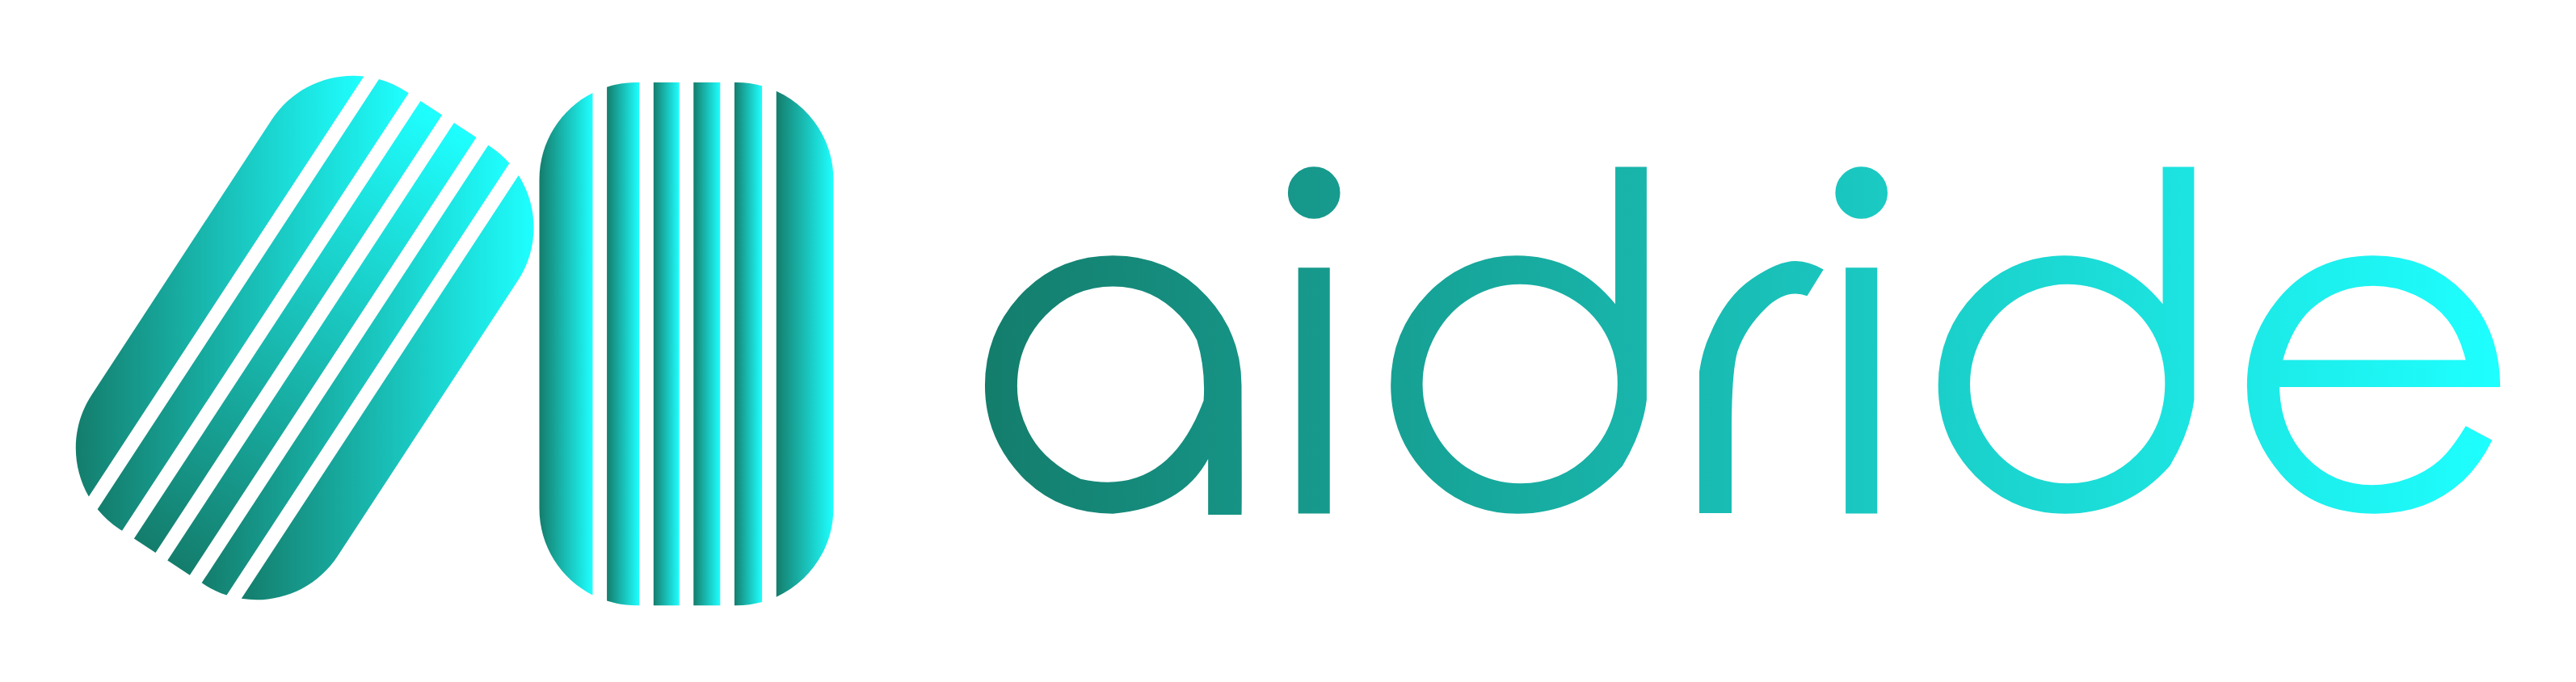 Business logo of Aidride